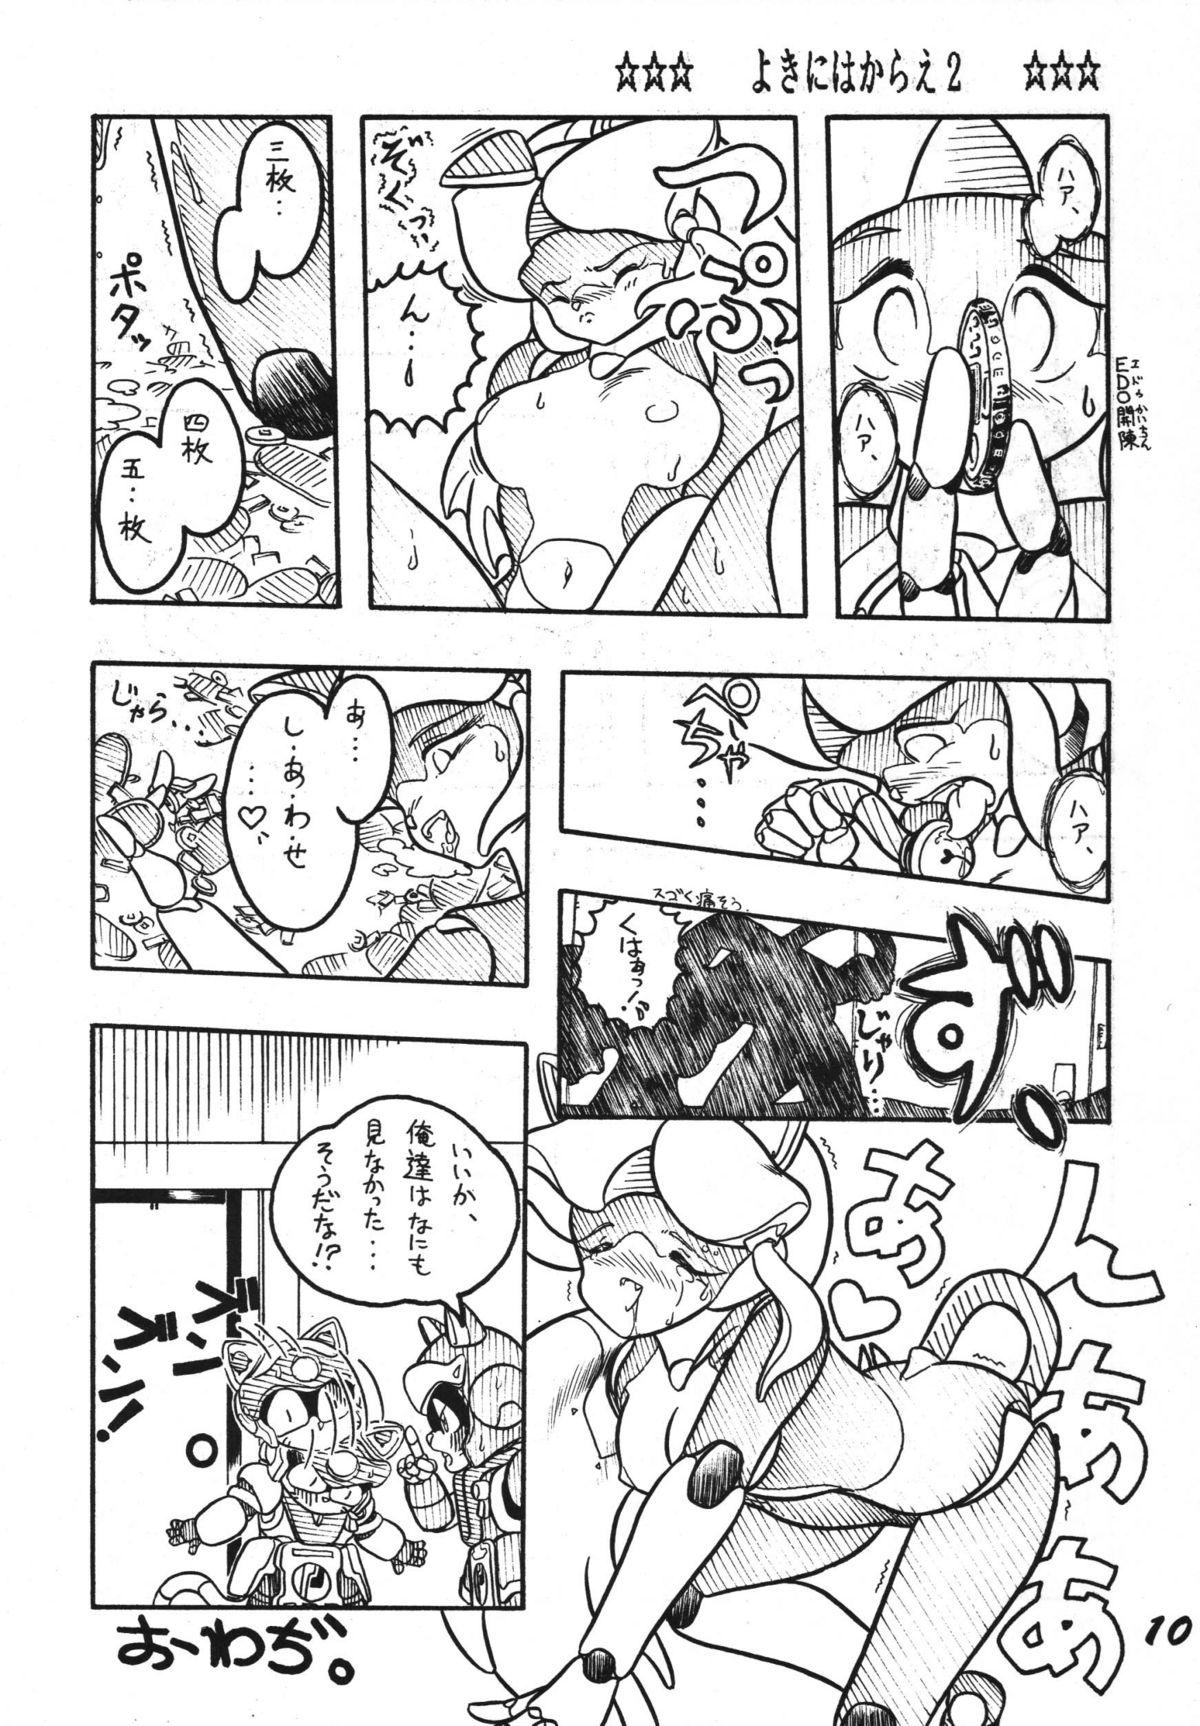 Teen Sex Yokini Hakarae - Ni no Maki - Samurai pizza cats Boquete - Page 10